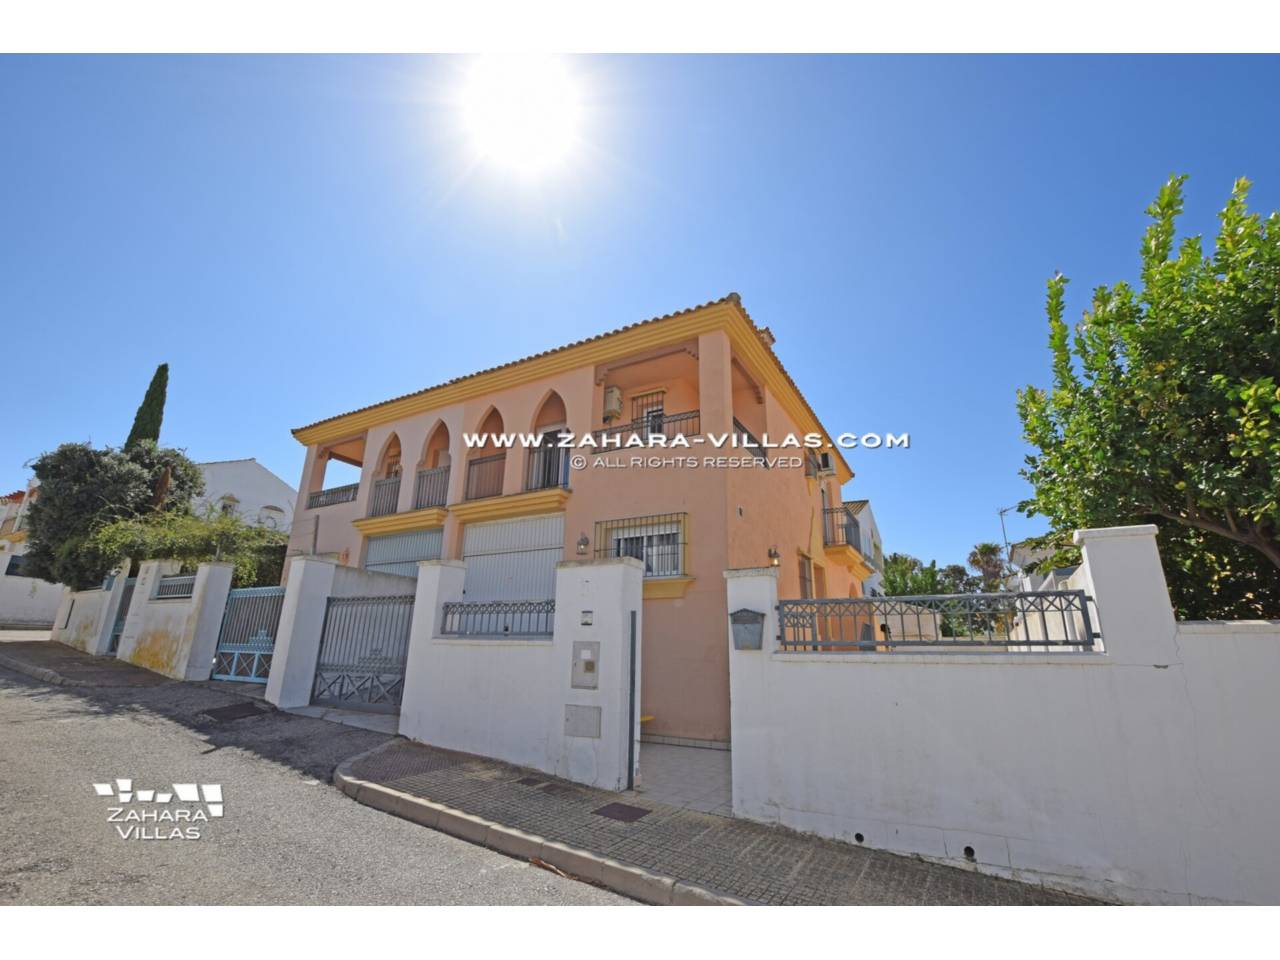 Imagen 1 de Casa pareada en venta, zona La Tahona,  Zahara de los Atunes